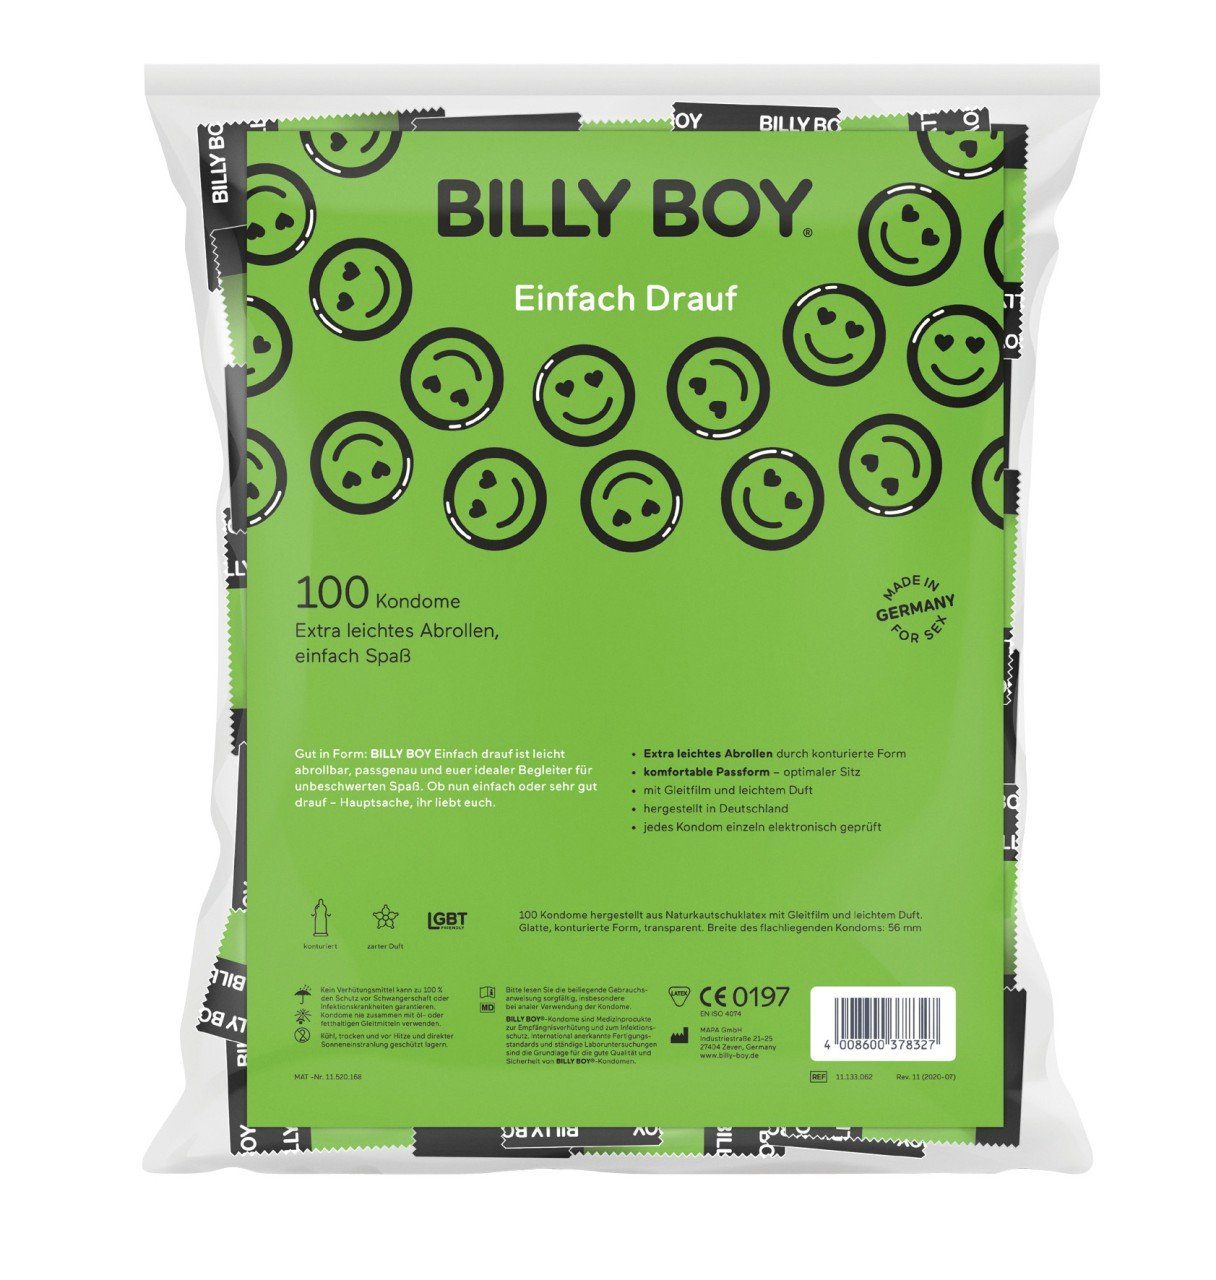 Billy Boy Einhand-Kondome BILLY Btl. Einfach 100er BOY Drauf